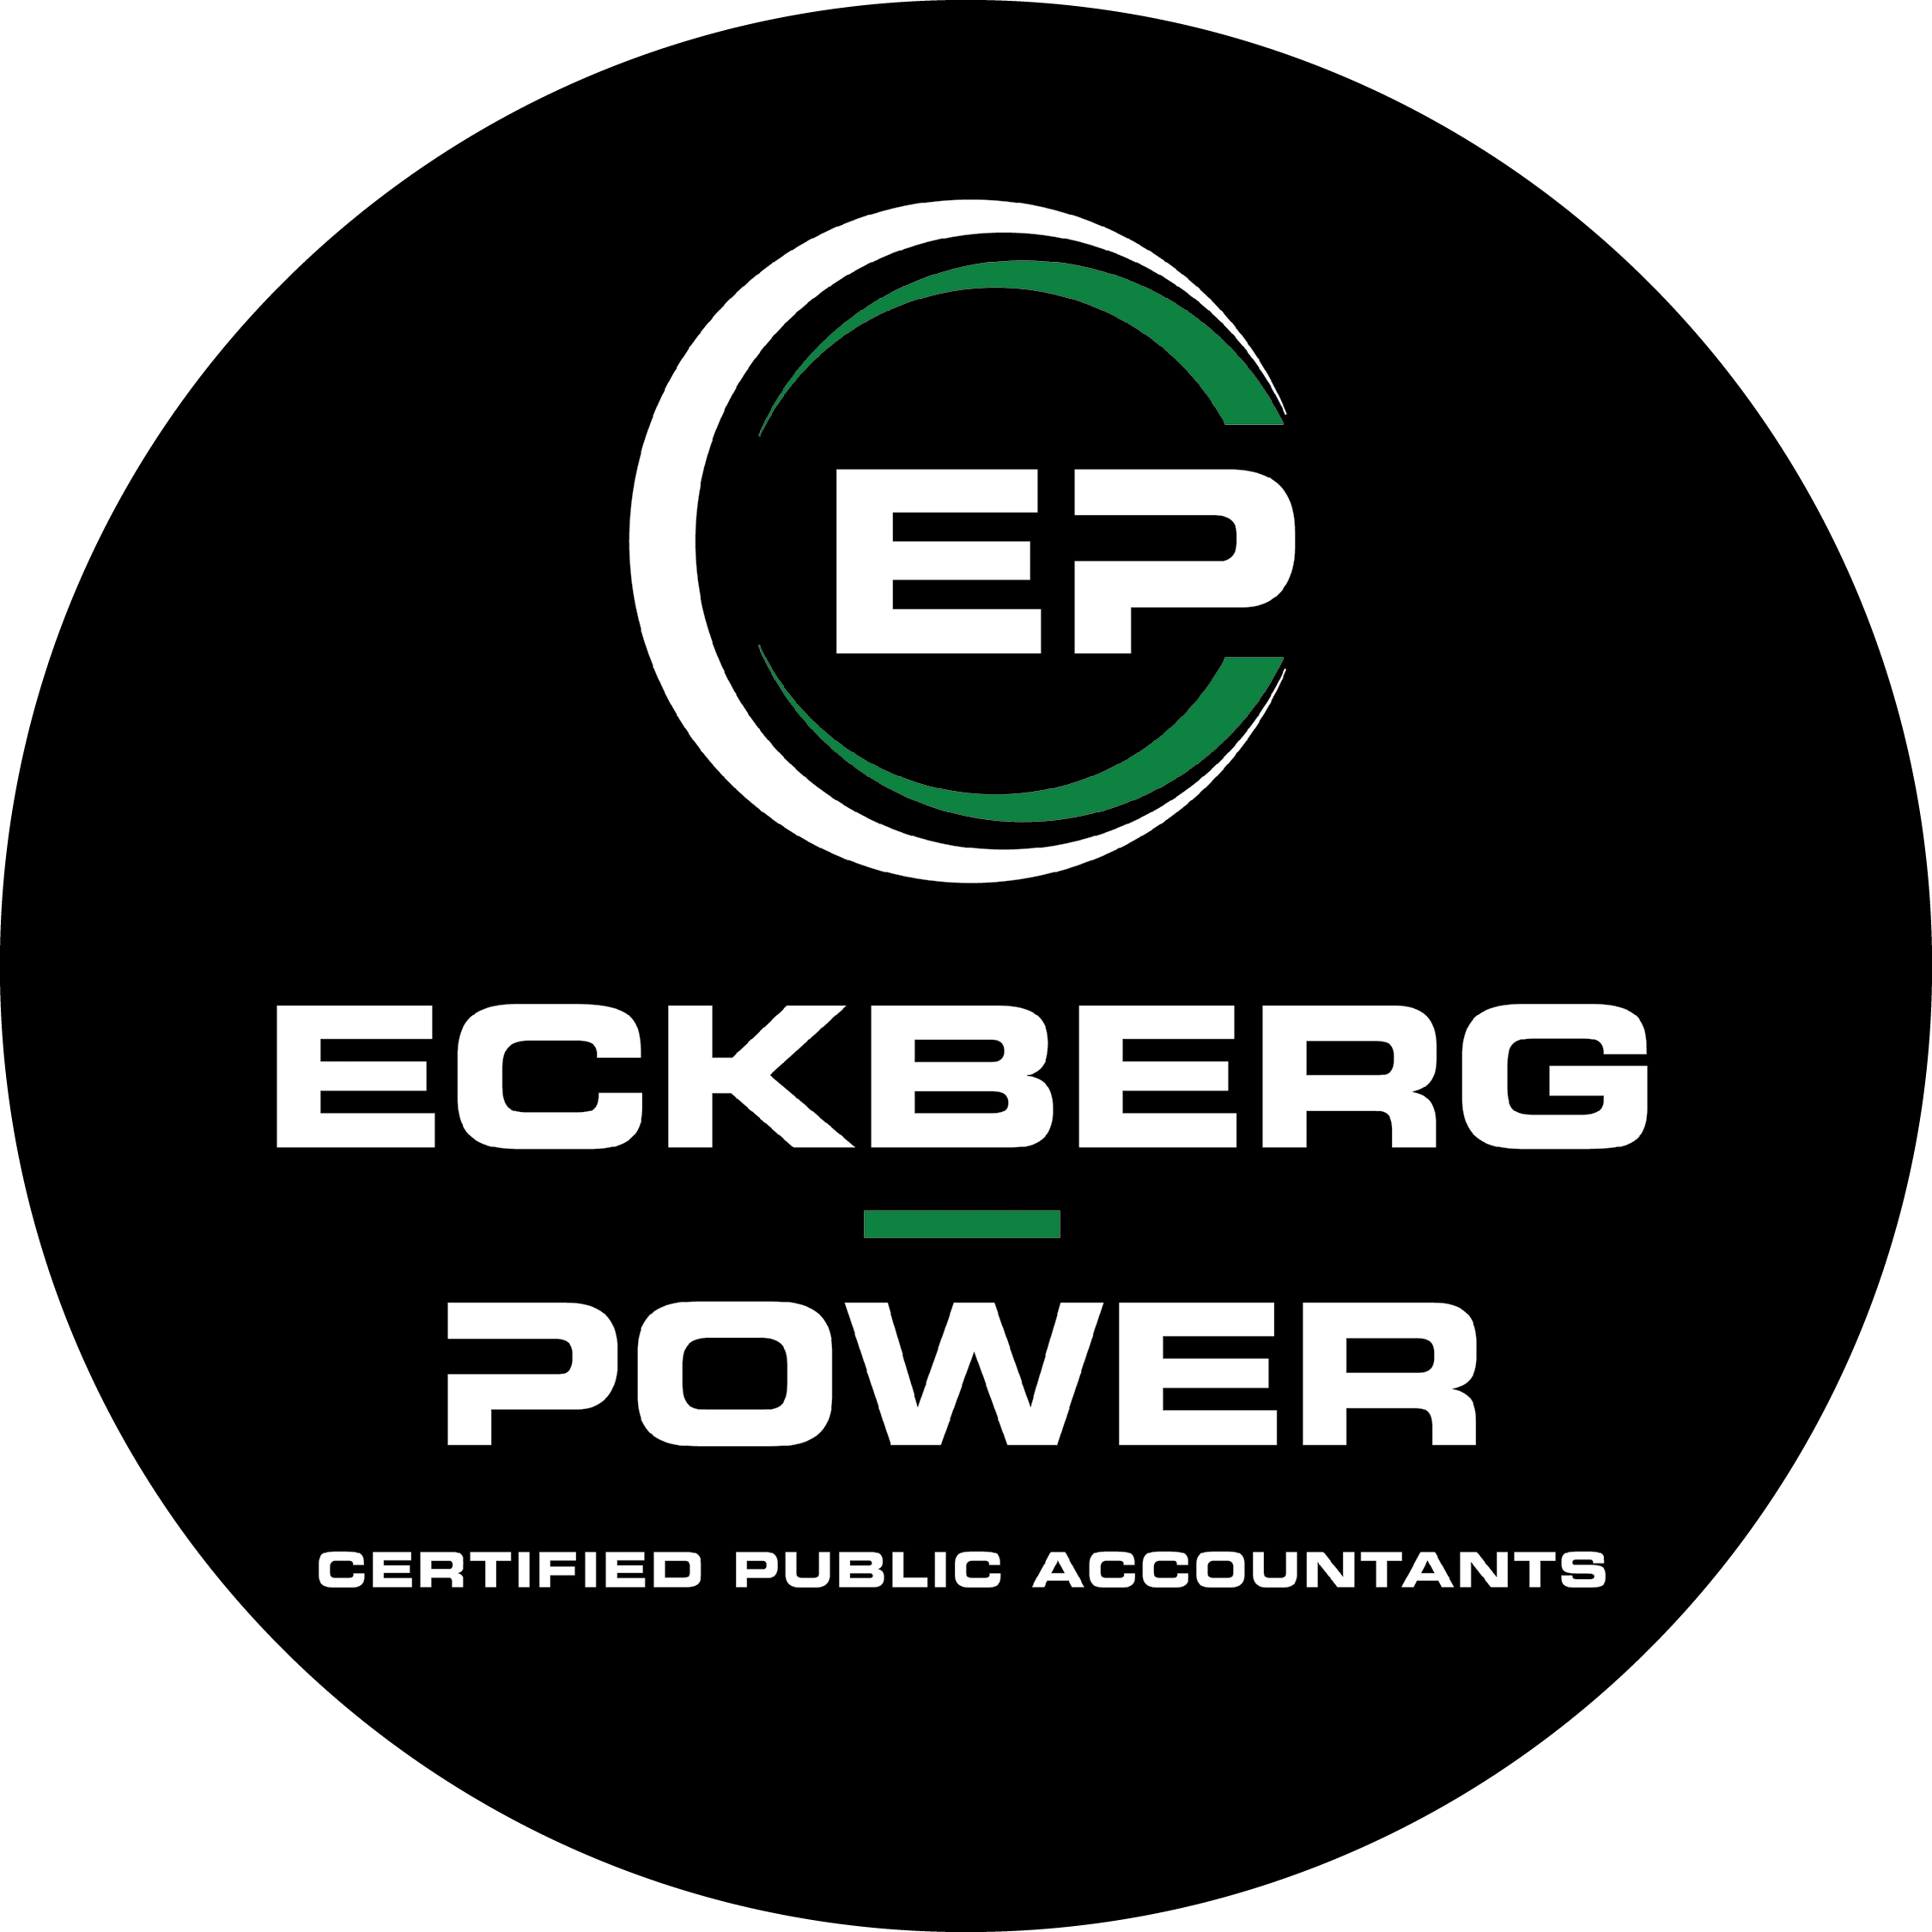 Eckberg Power LLC